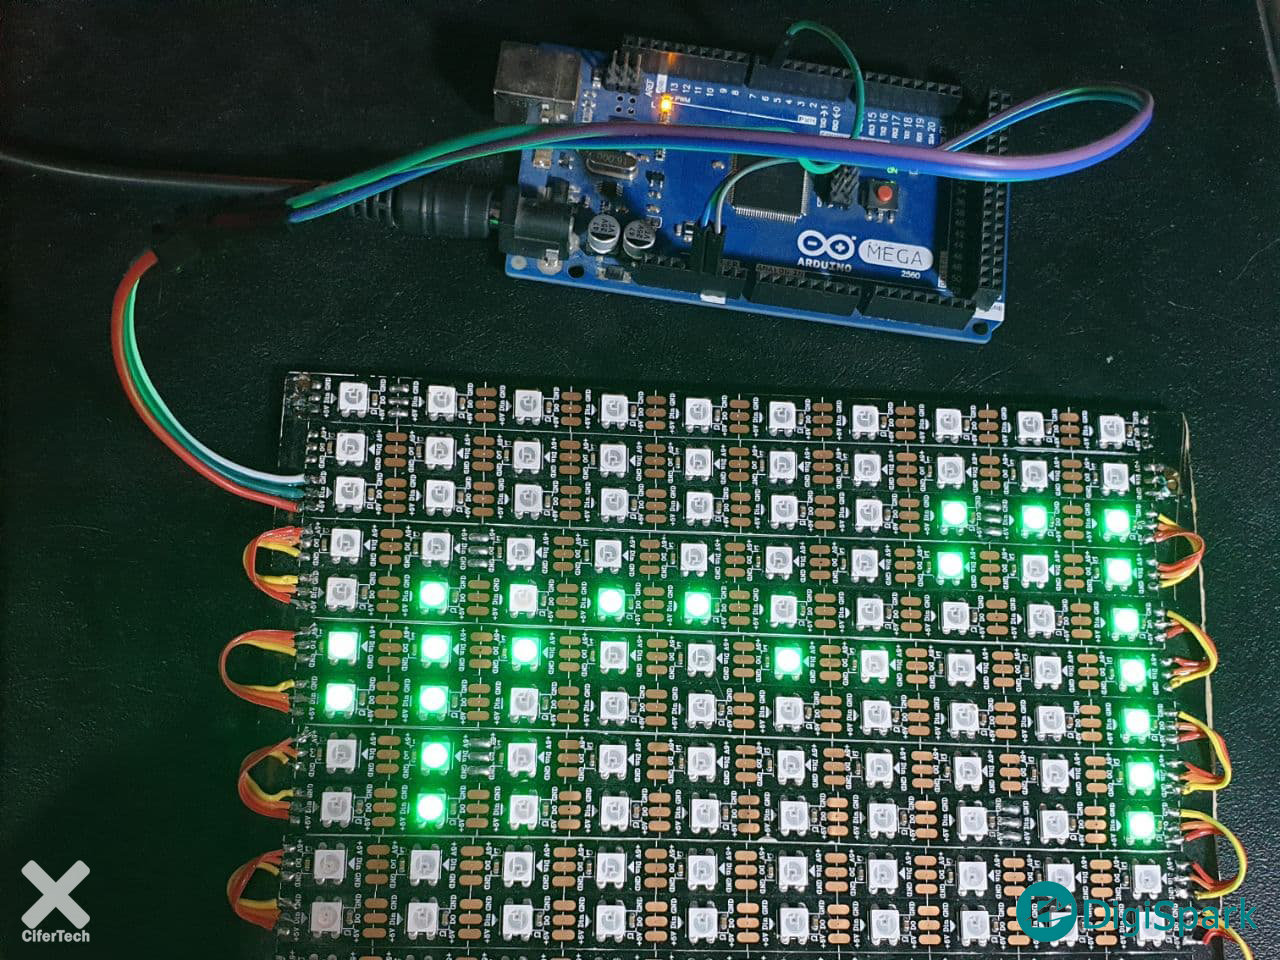 اتصالات LED ws2812 در ساخت تابلو روان با آردوینو - دیجی اسپارک